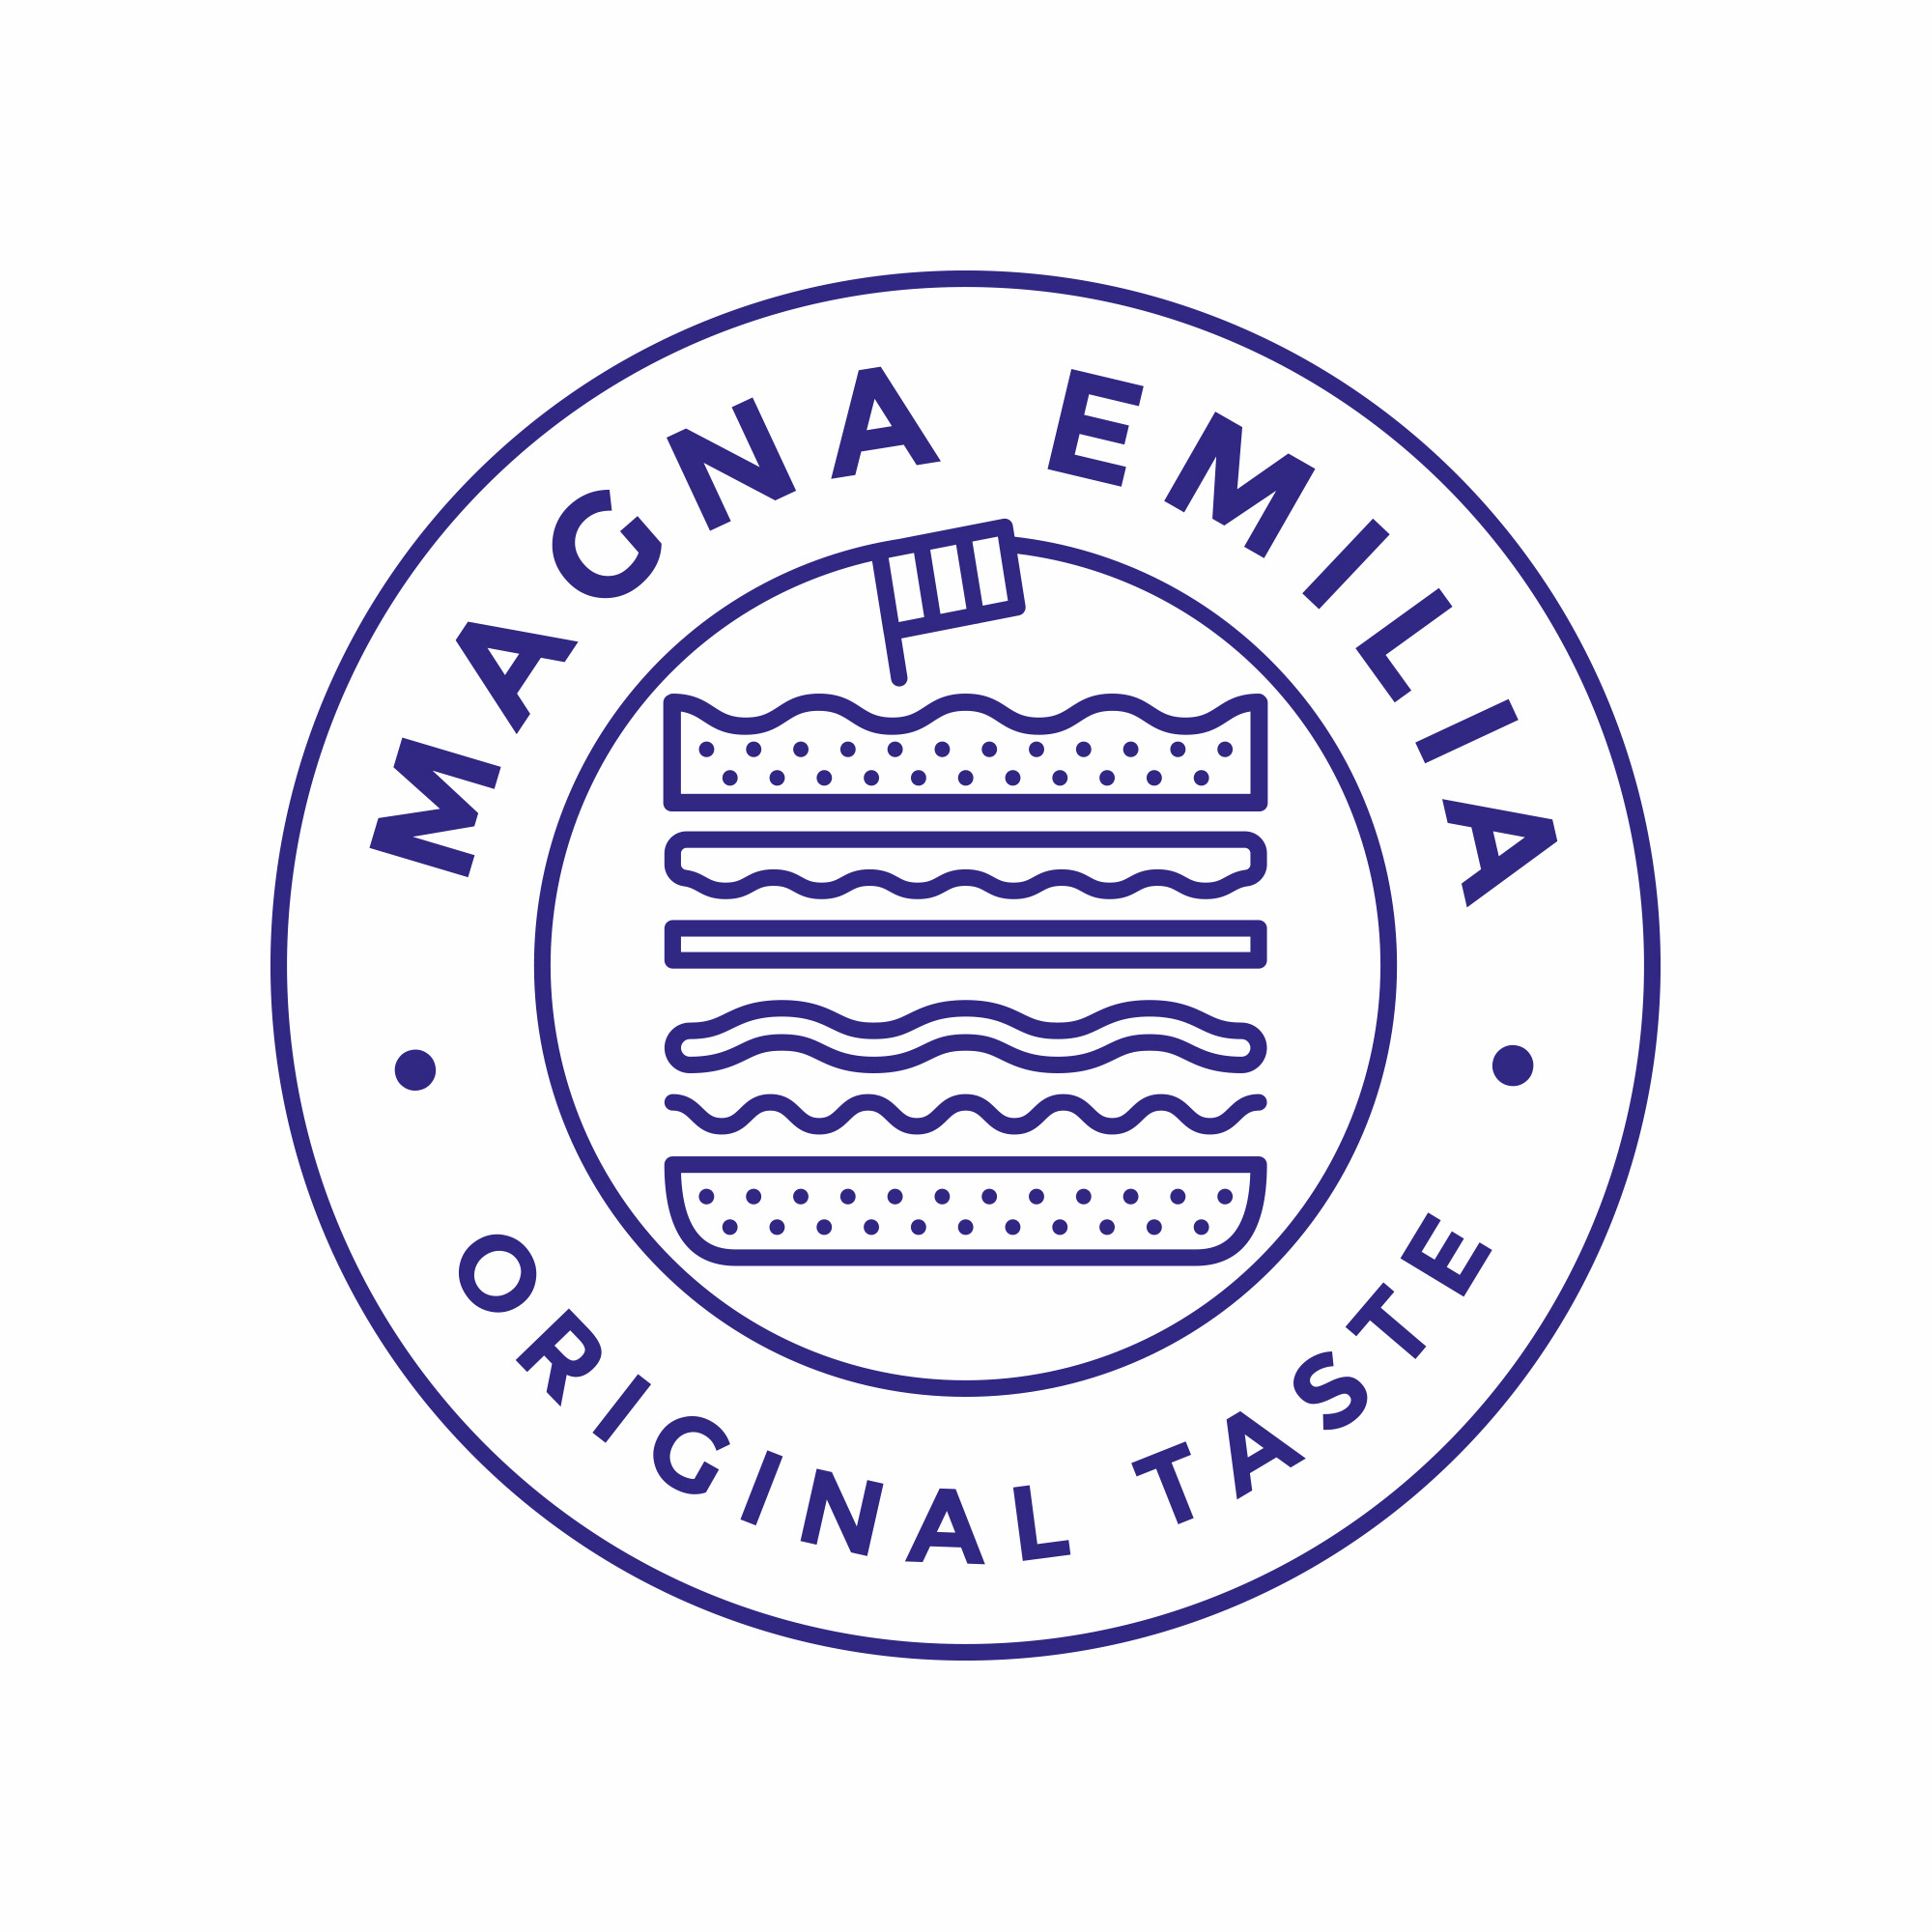 qreactive-magna-emilia-logo-stamp